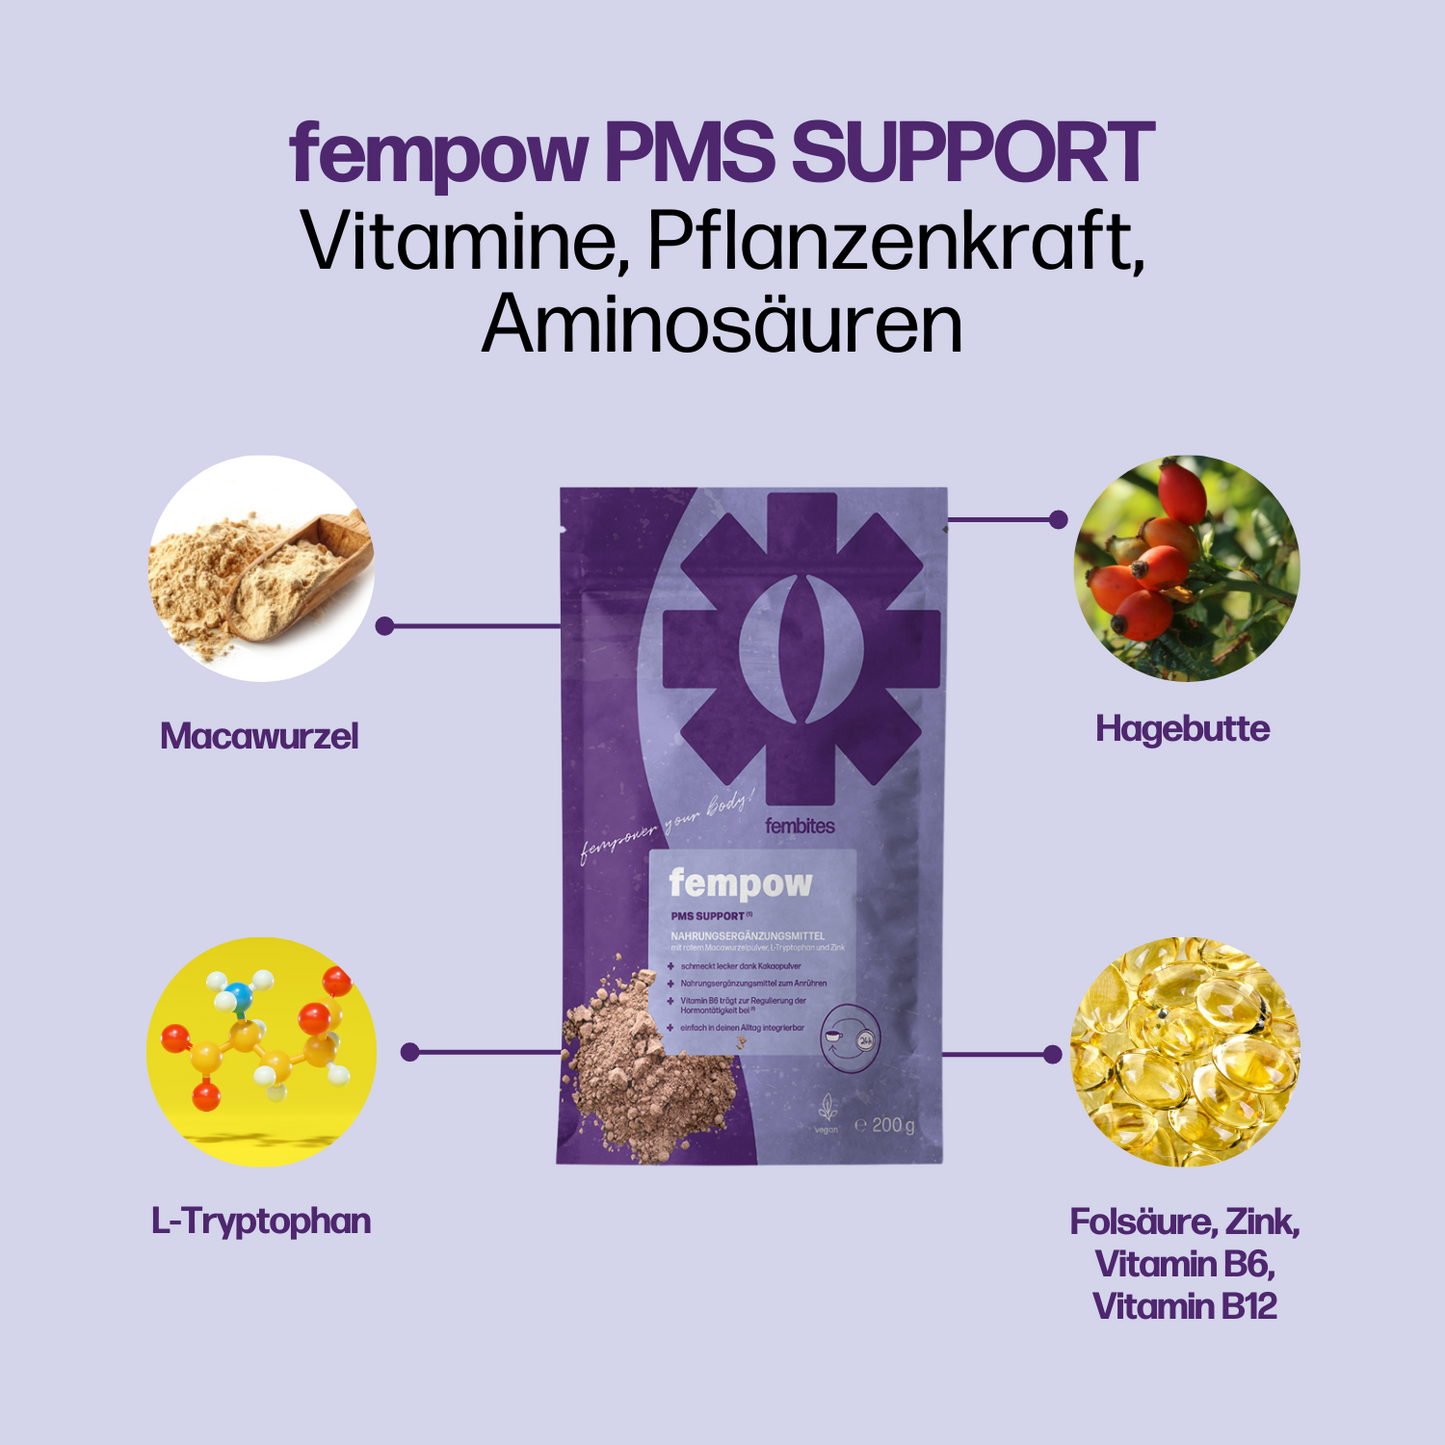 4 Monatskur fempow PMS SUPPORT* - Vitamin B6 trägt zur Regulierung der Hormontätigkeit bei